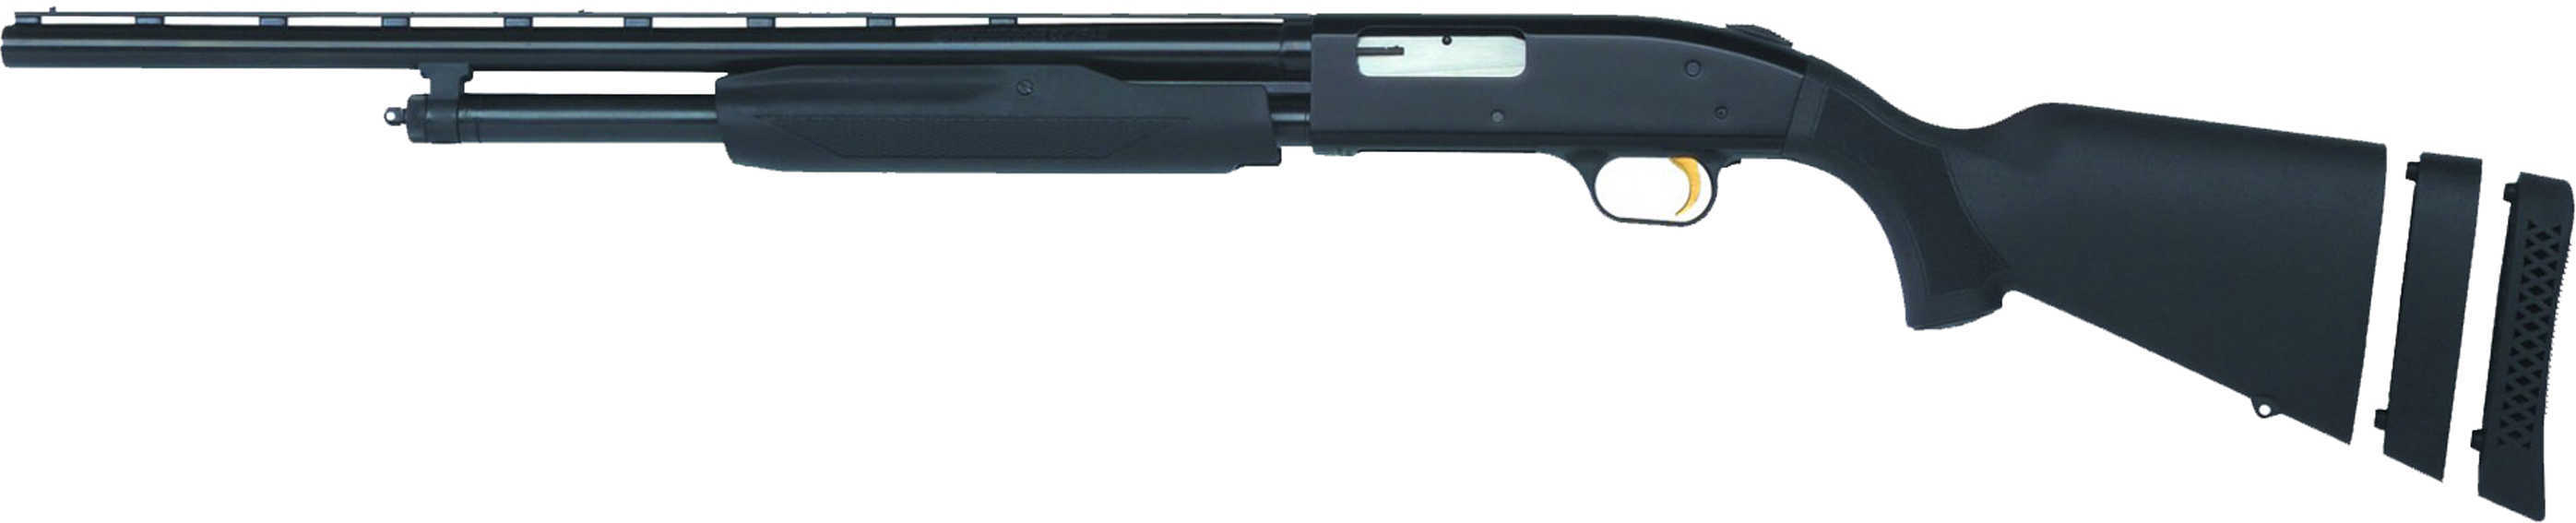 Mossberg 500 LEFT HANDEDED Bantam Blued/Synthetic 20 Gauge Shotgun 22" Barrel 6 Round 59822